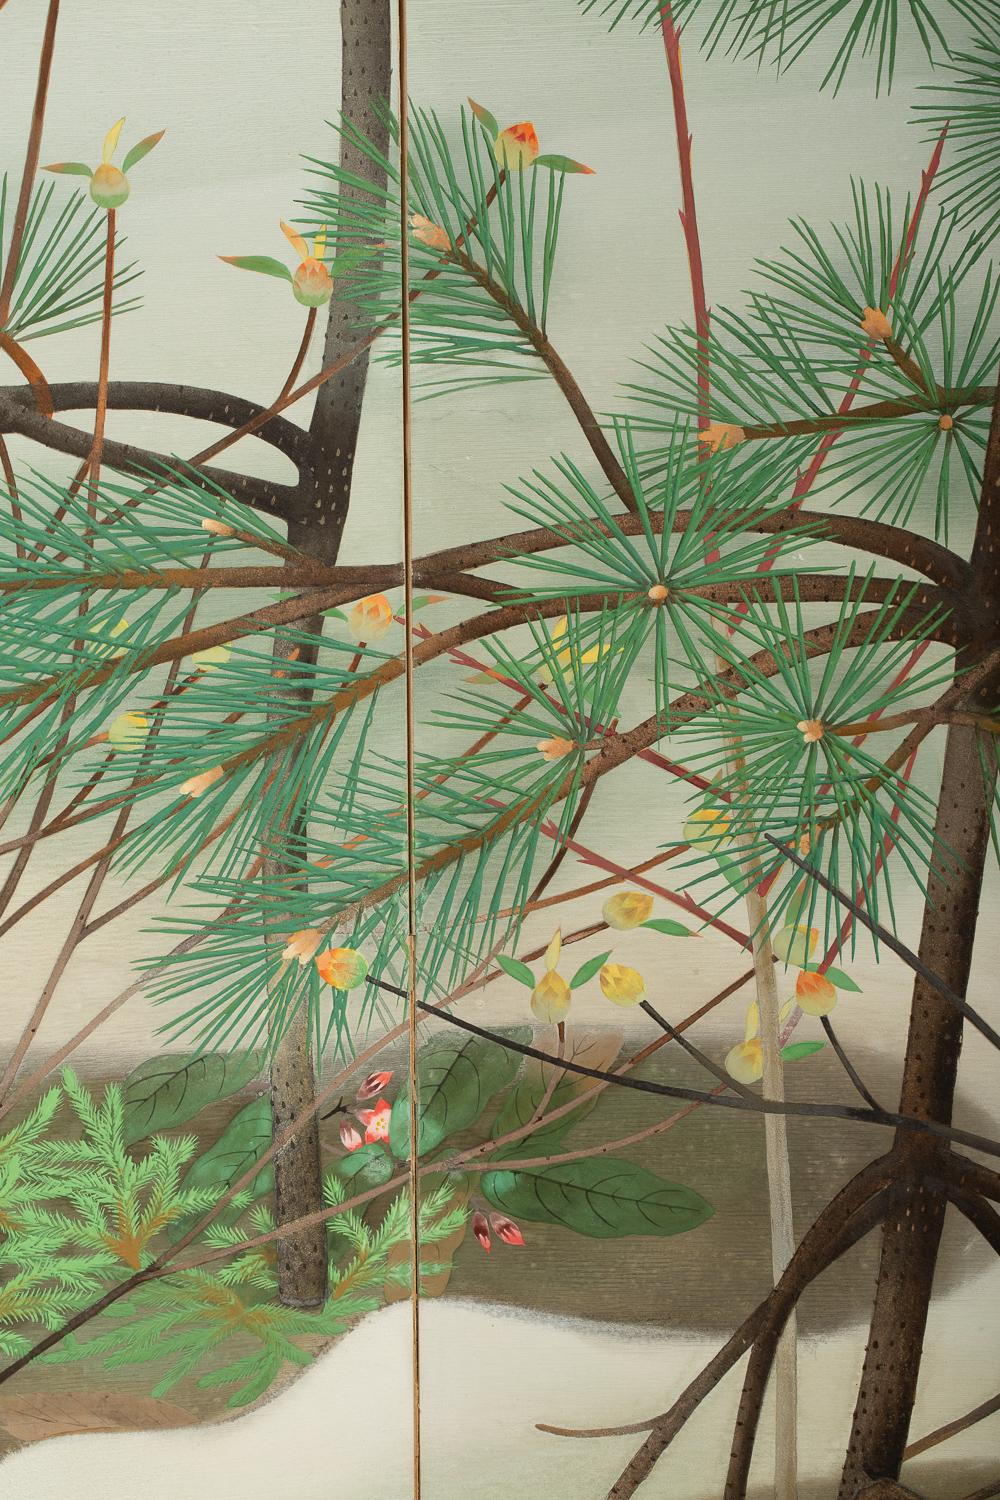 Wunderschön gemalt von Kido So (1899 - 1984). Geboren in Kyoto, studierte So Malerei an der Städtischen Malereischule von Kyoto unter Yamamoto Shunkyo (1871 - 1933). So stellte er während der Showa-Periode (1926-1945) ständig auf den kaiserlichen